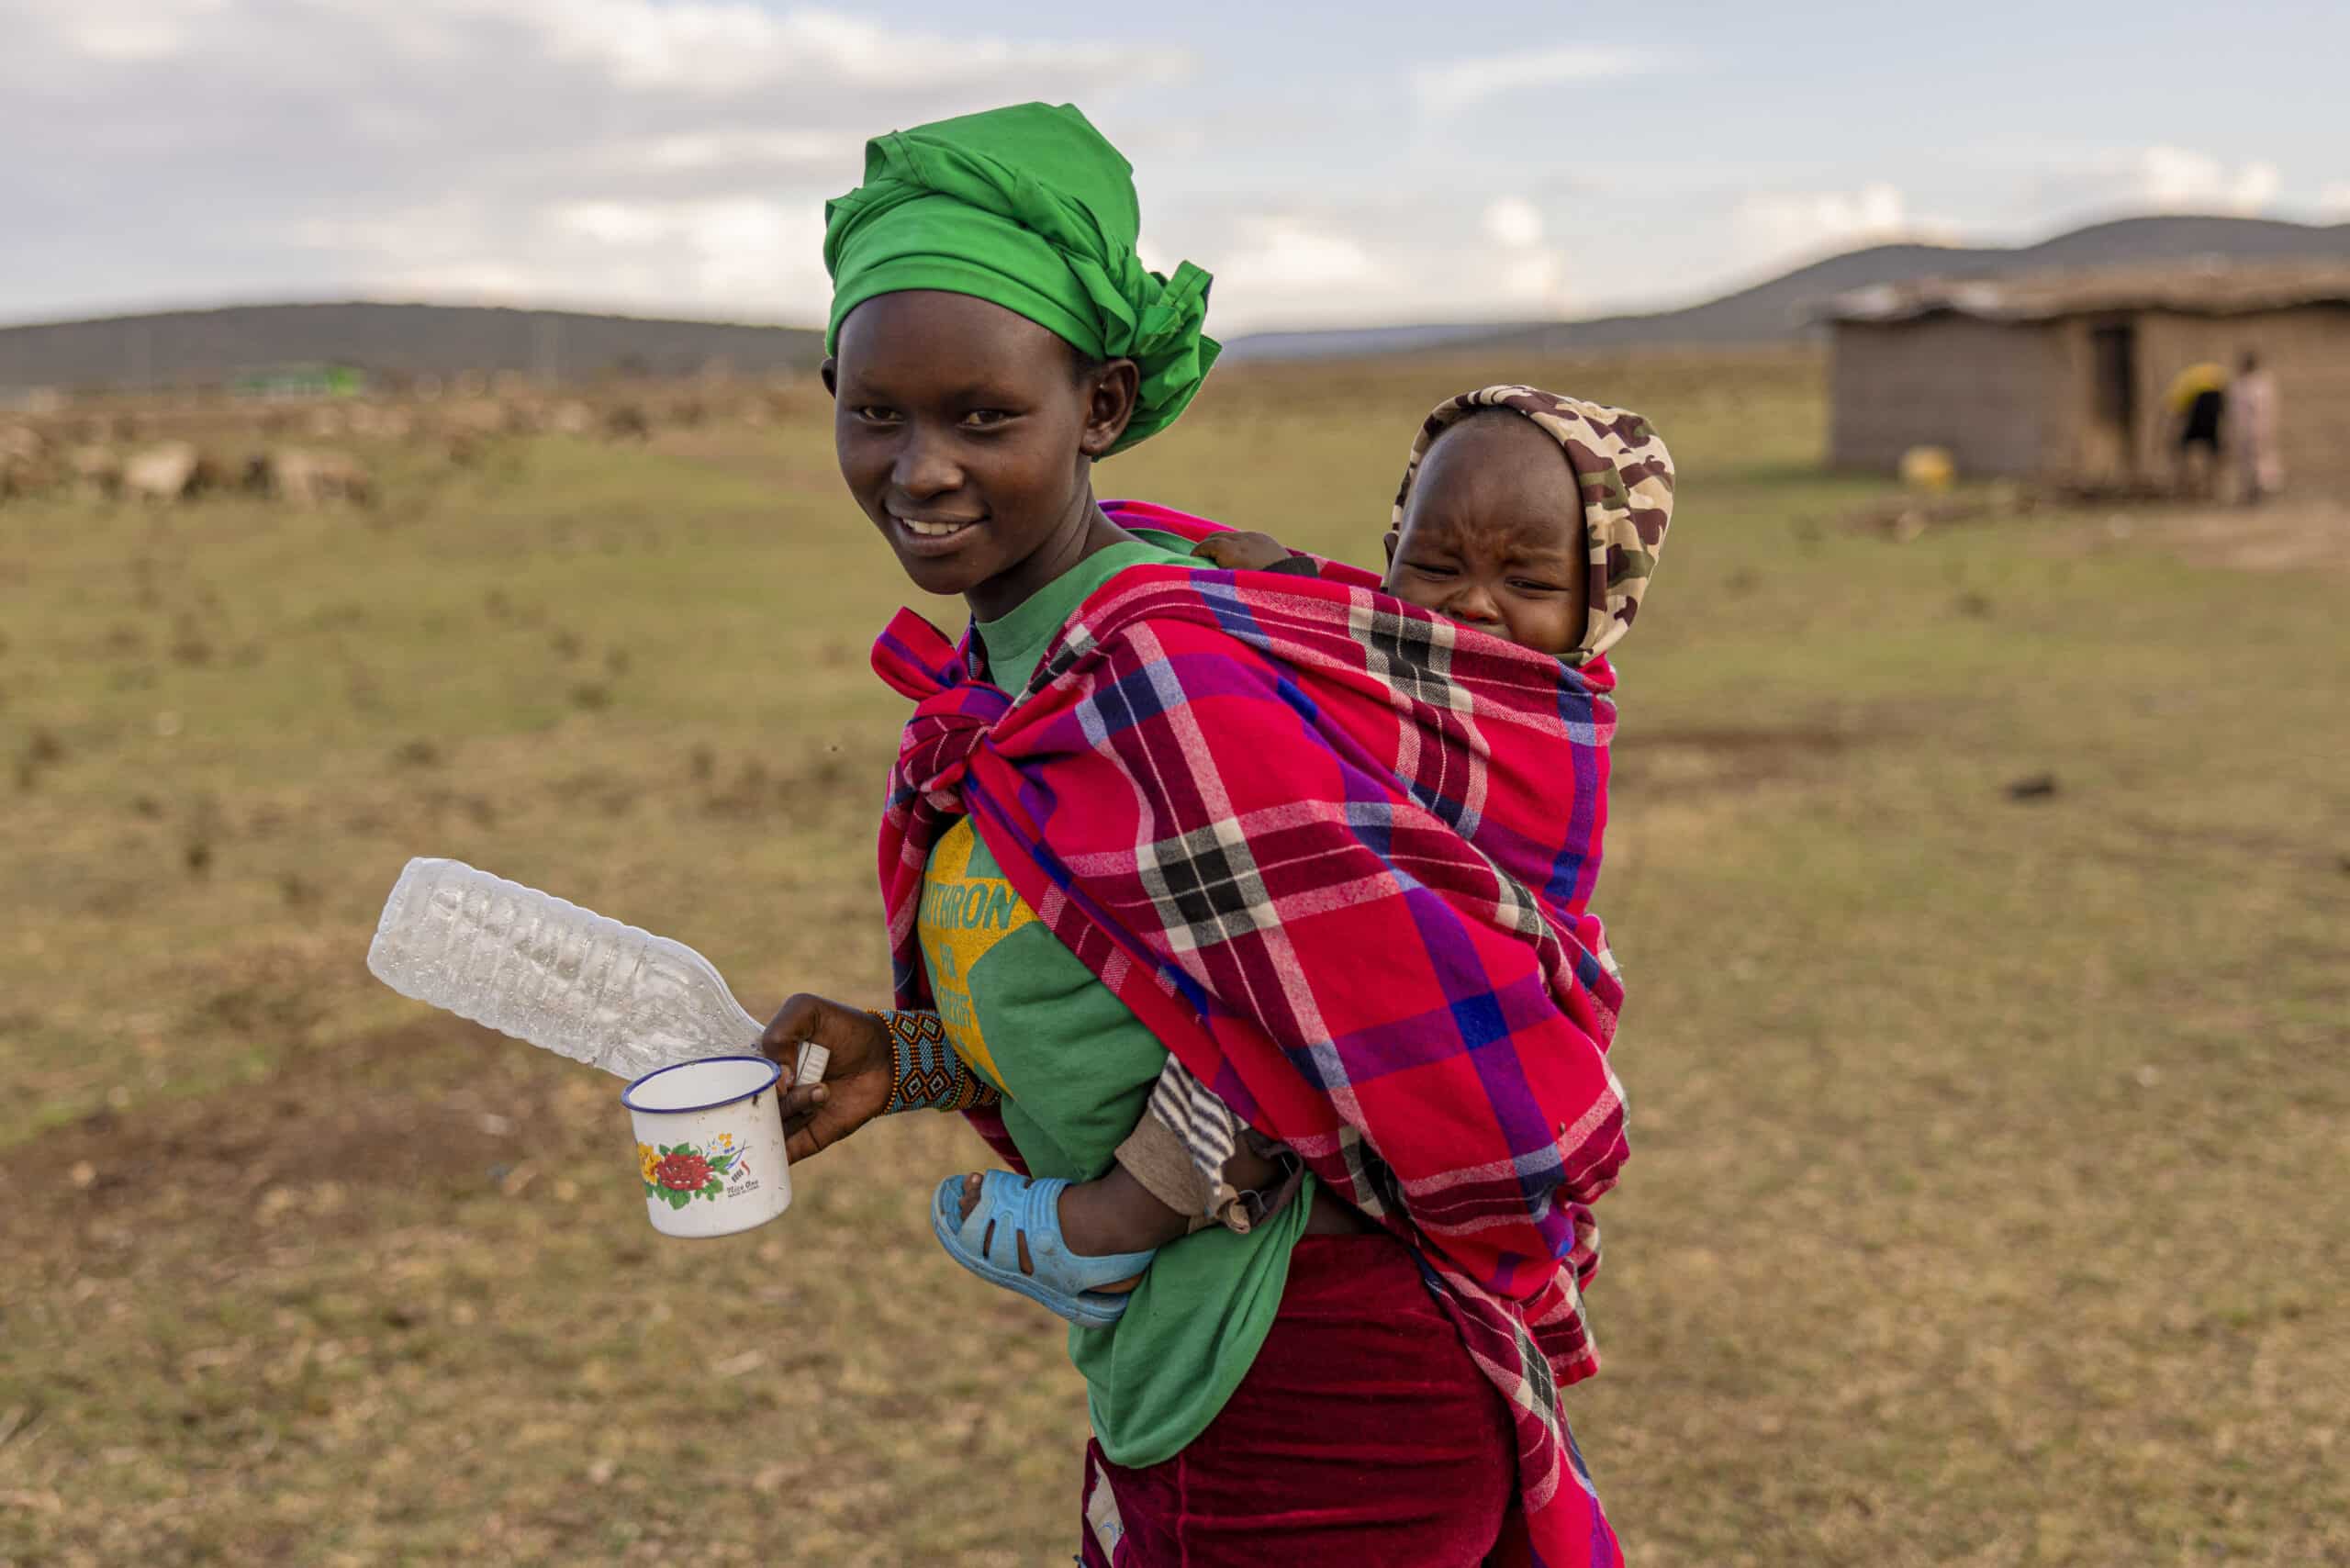 Eine junge Frau mit einem leuchtend grünen Kopftuch und einem karierten Schal lächelt, trägt ein Baby auf dem Rücken und hält eine leere Plastikflasche in der Hand, im Hintergrund sind eine ländliche Landschaft und Hütten zu sehen. © Fotografie Tomas Rodriguez